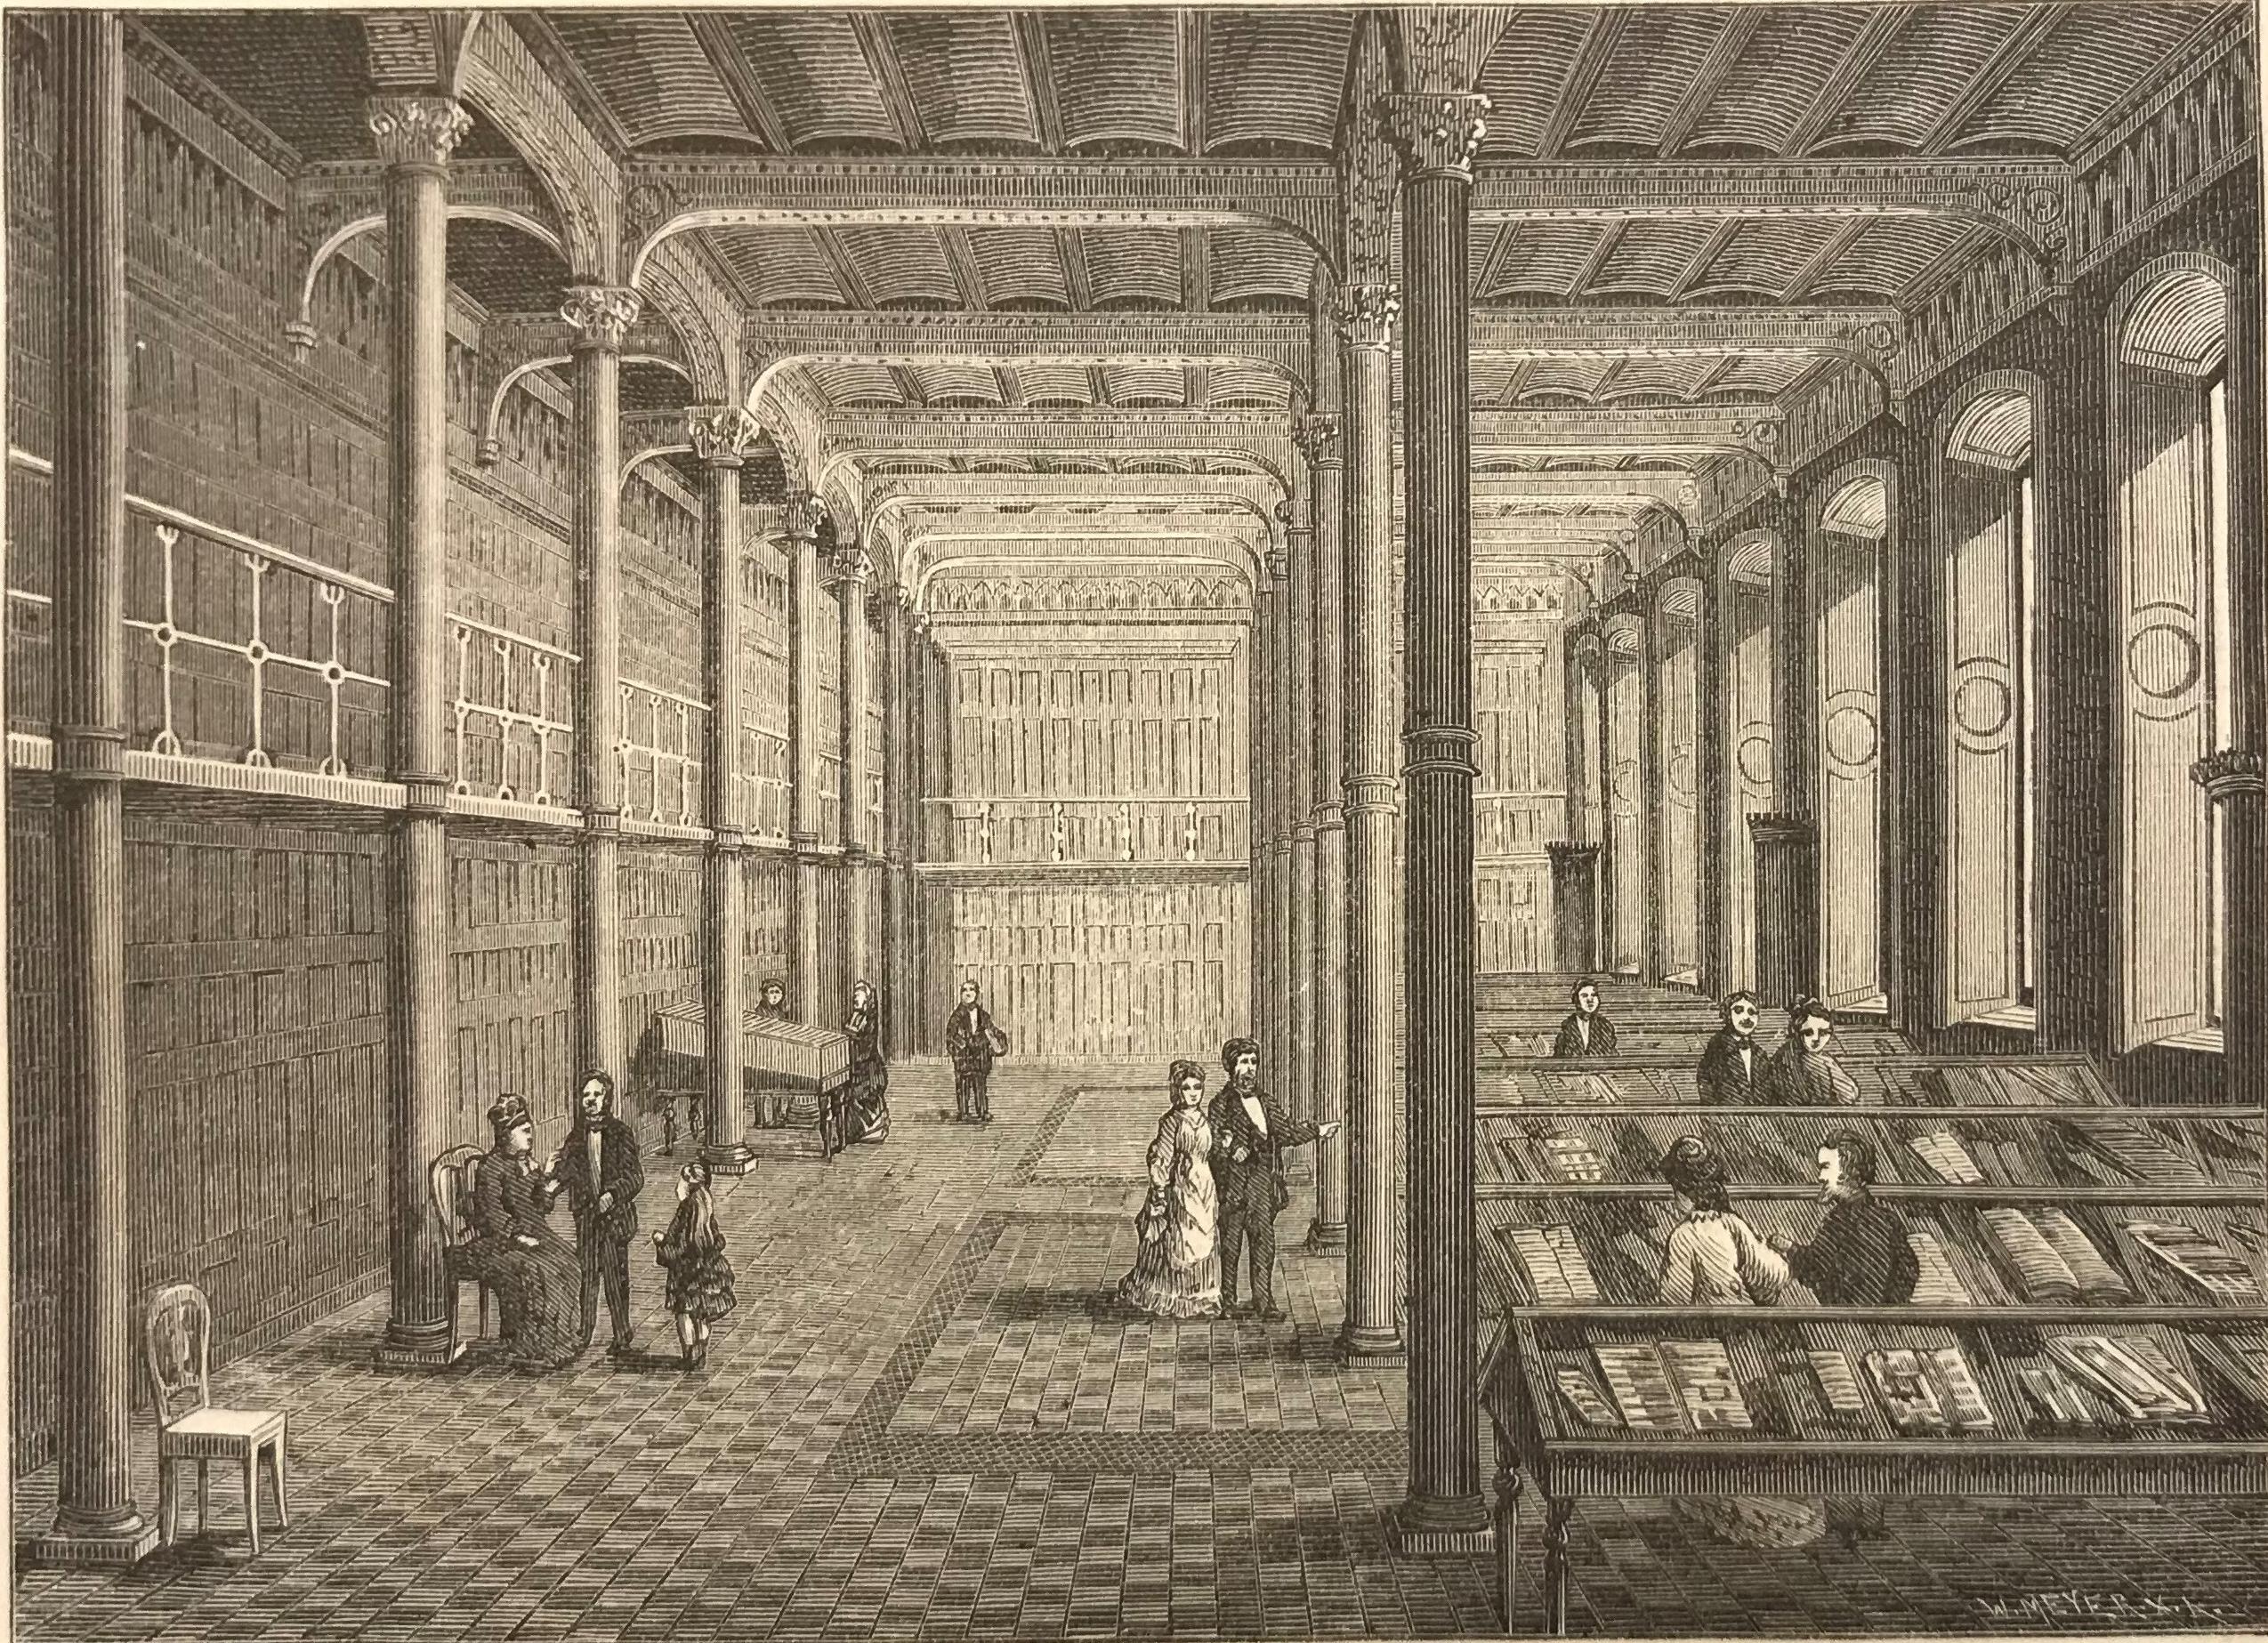 Svartvit tecknad bild av ett stort rum med höga pelare och stora fönster, där människor i 1800-talskläder tittar på böcker som ligger i långa glasmontrar.